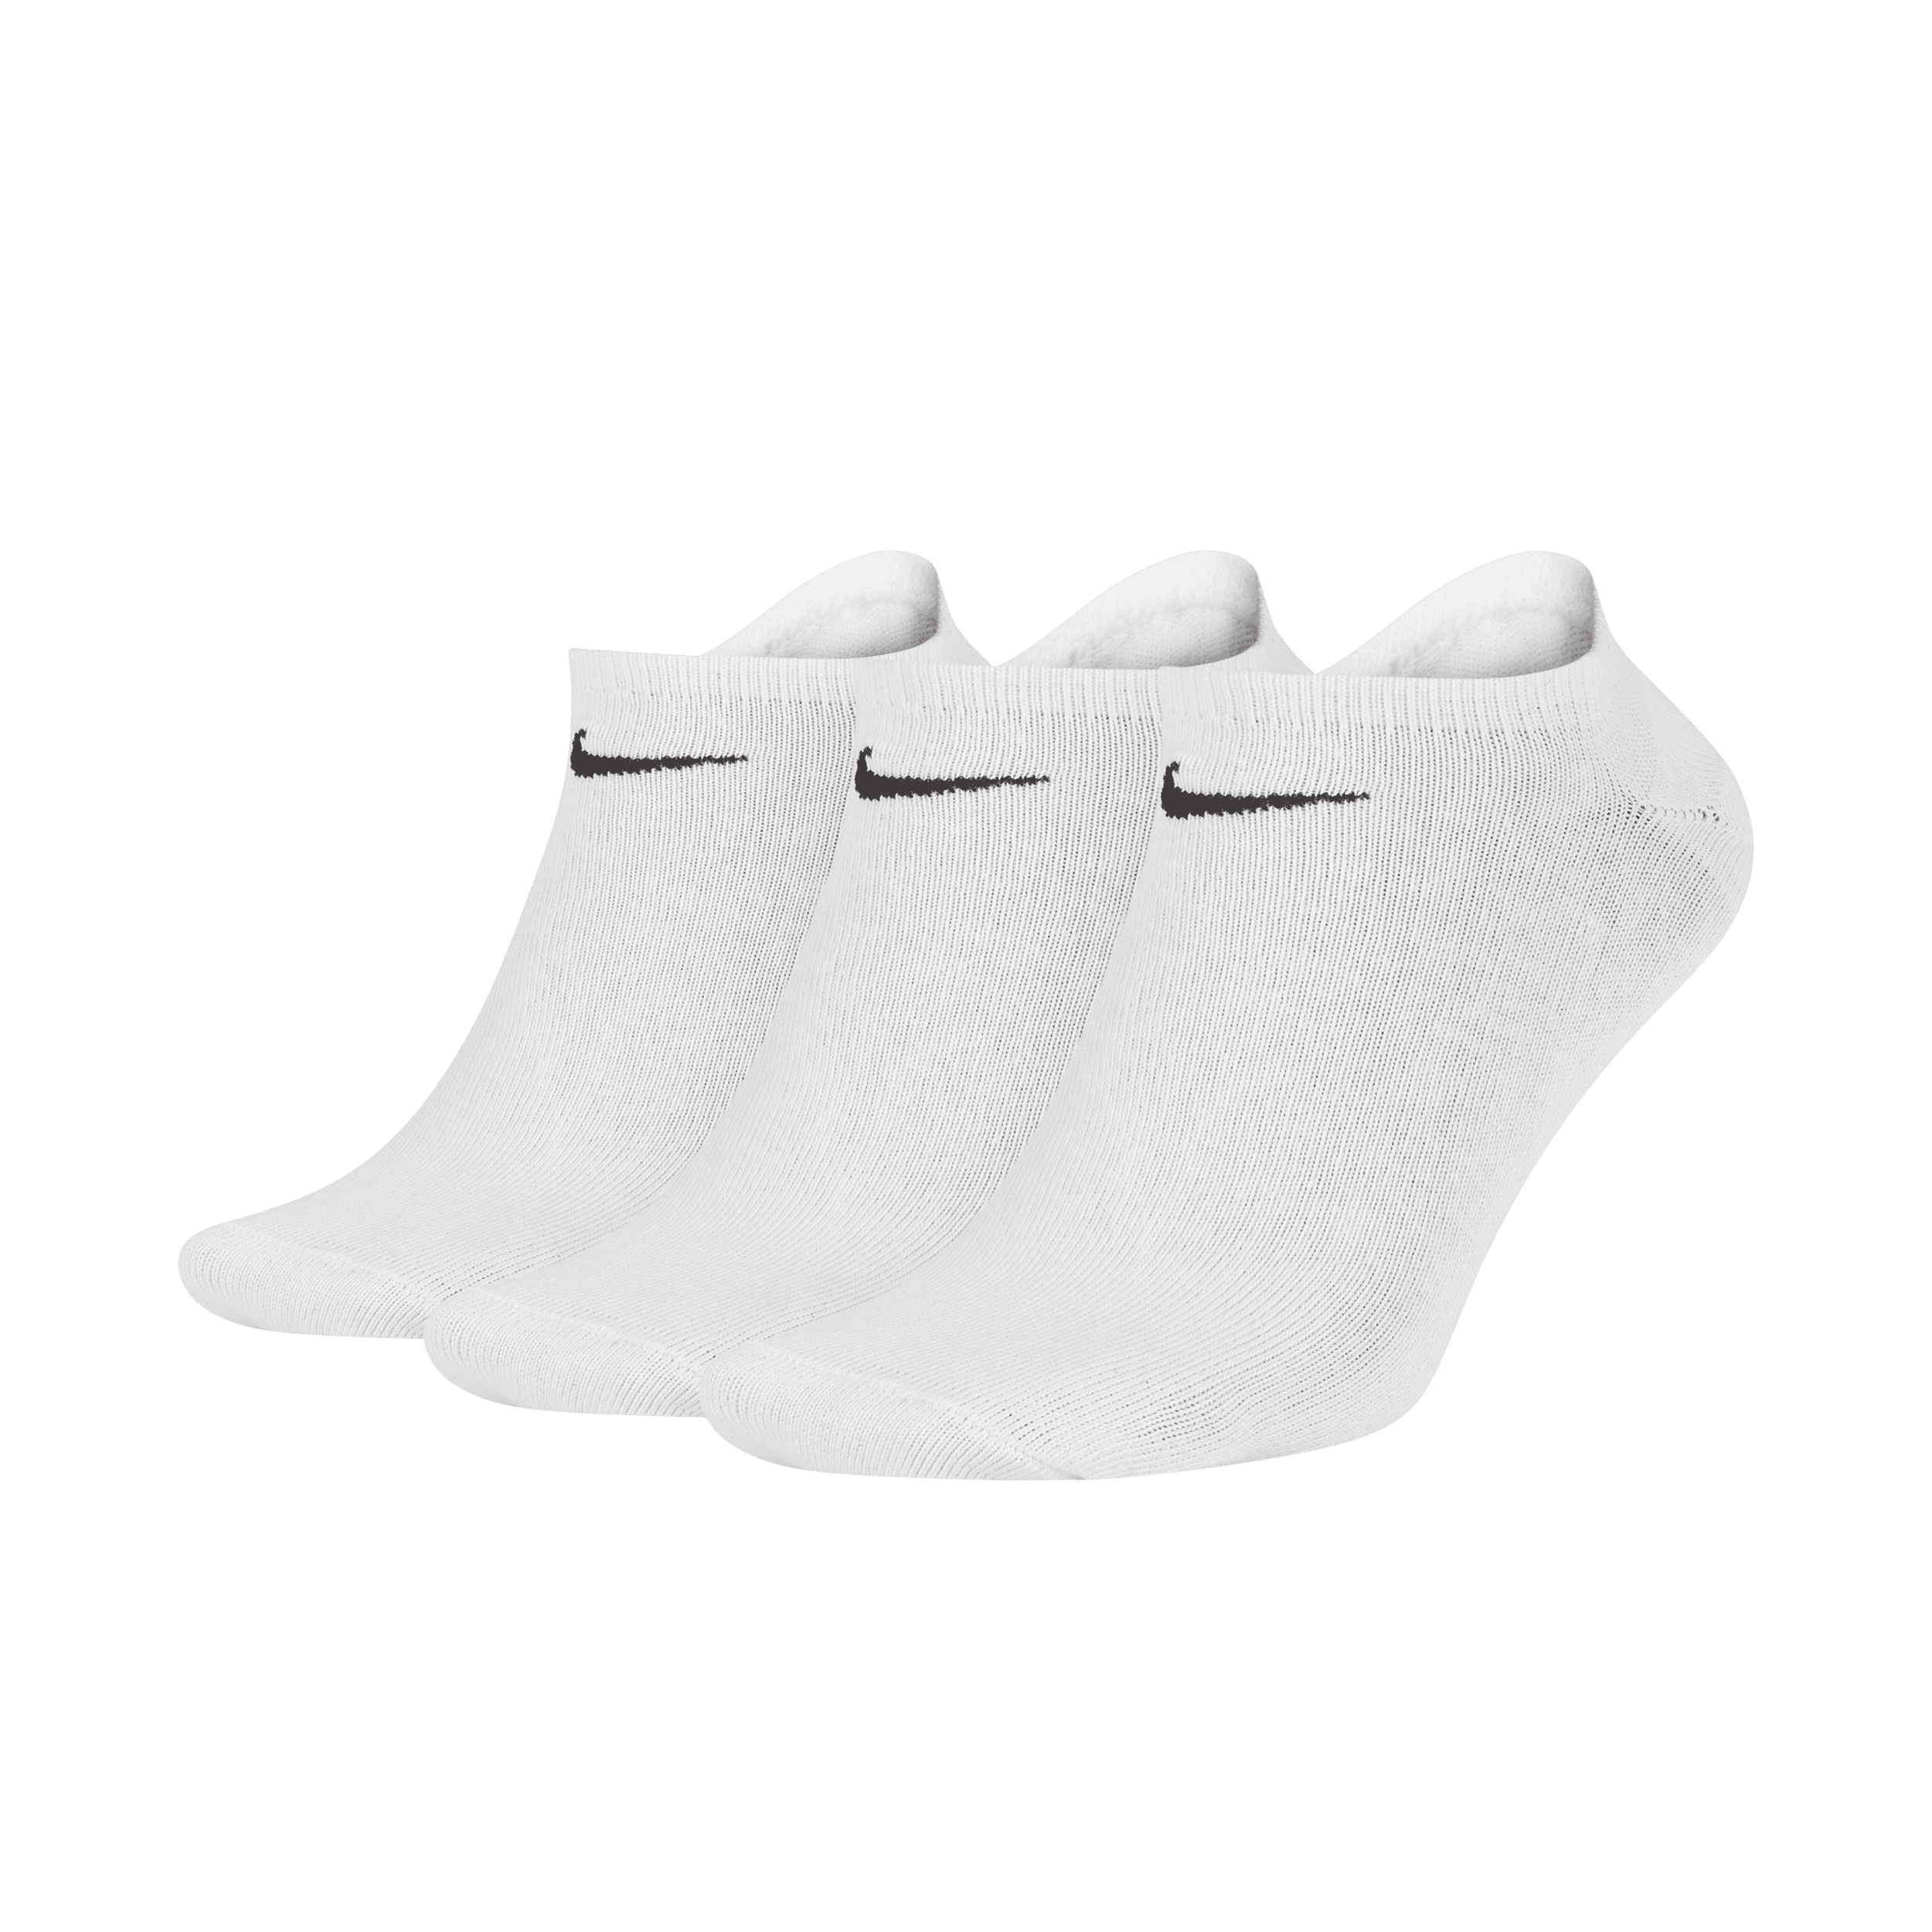 Nike Lightweight Calcetines invisibles de entrenamiento (3 pares) - Blanco